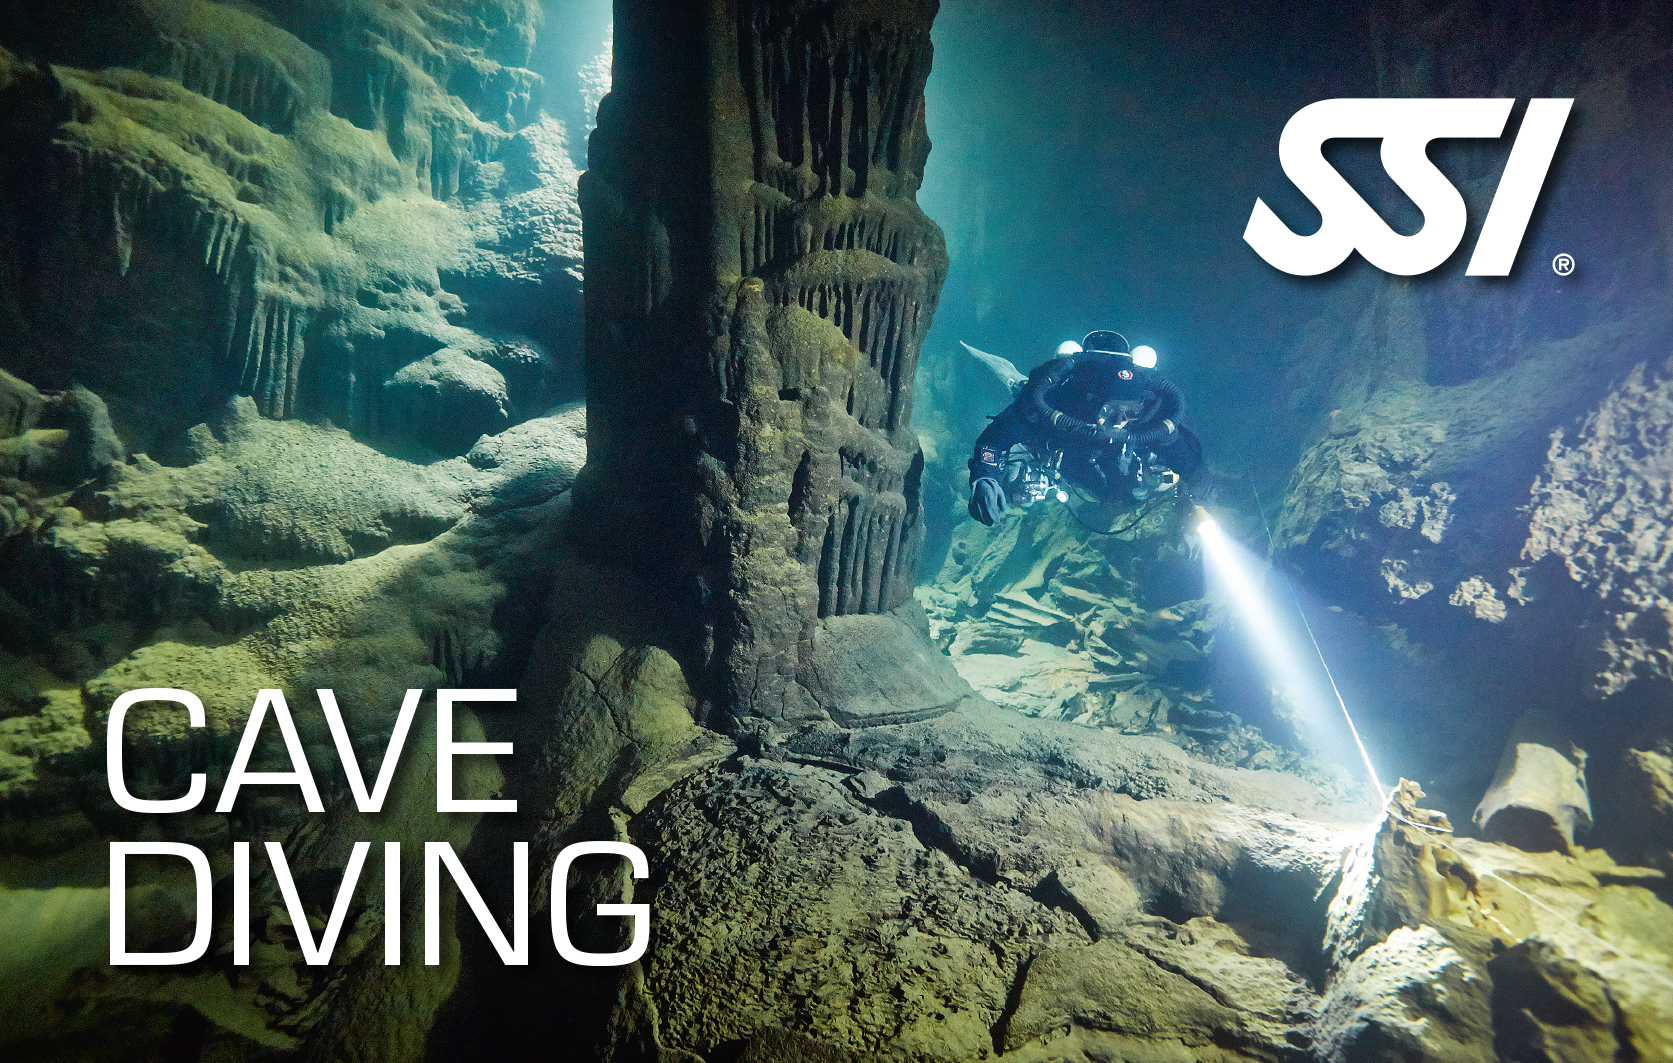 ssi-cave-diving-kurs-oesterreich-deutschland-schweiz-frankreich